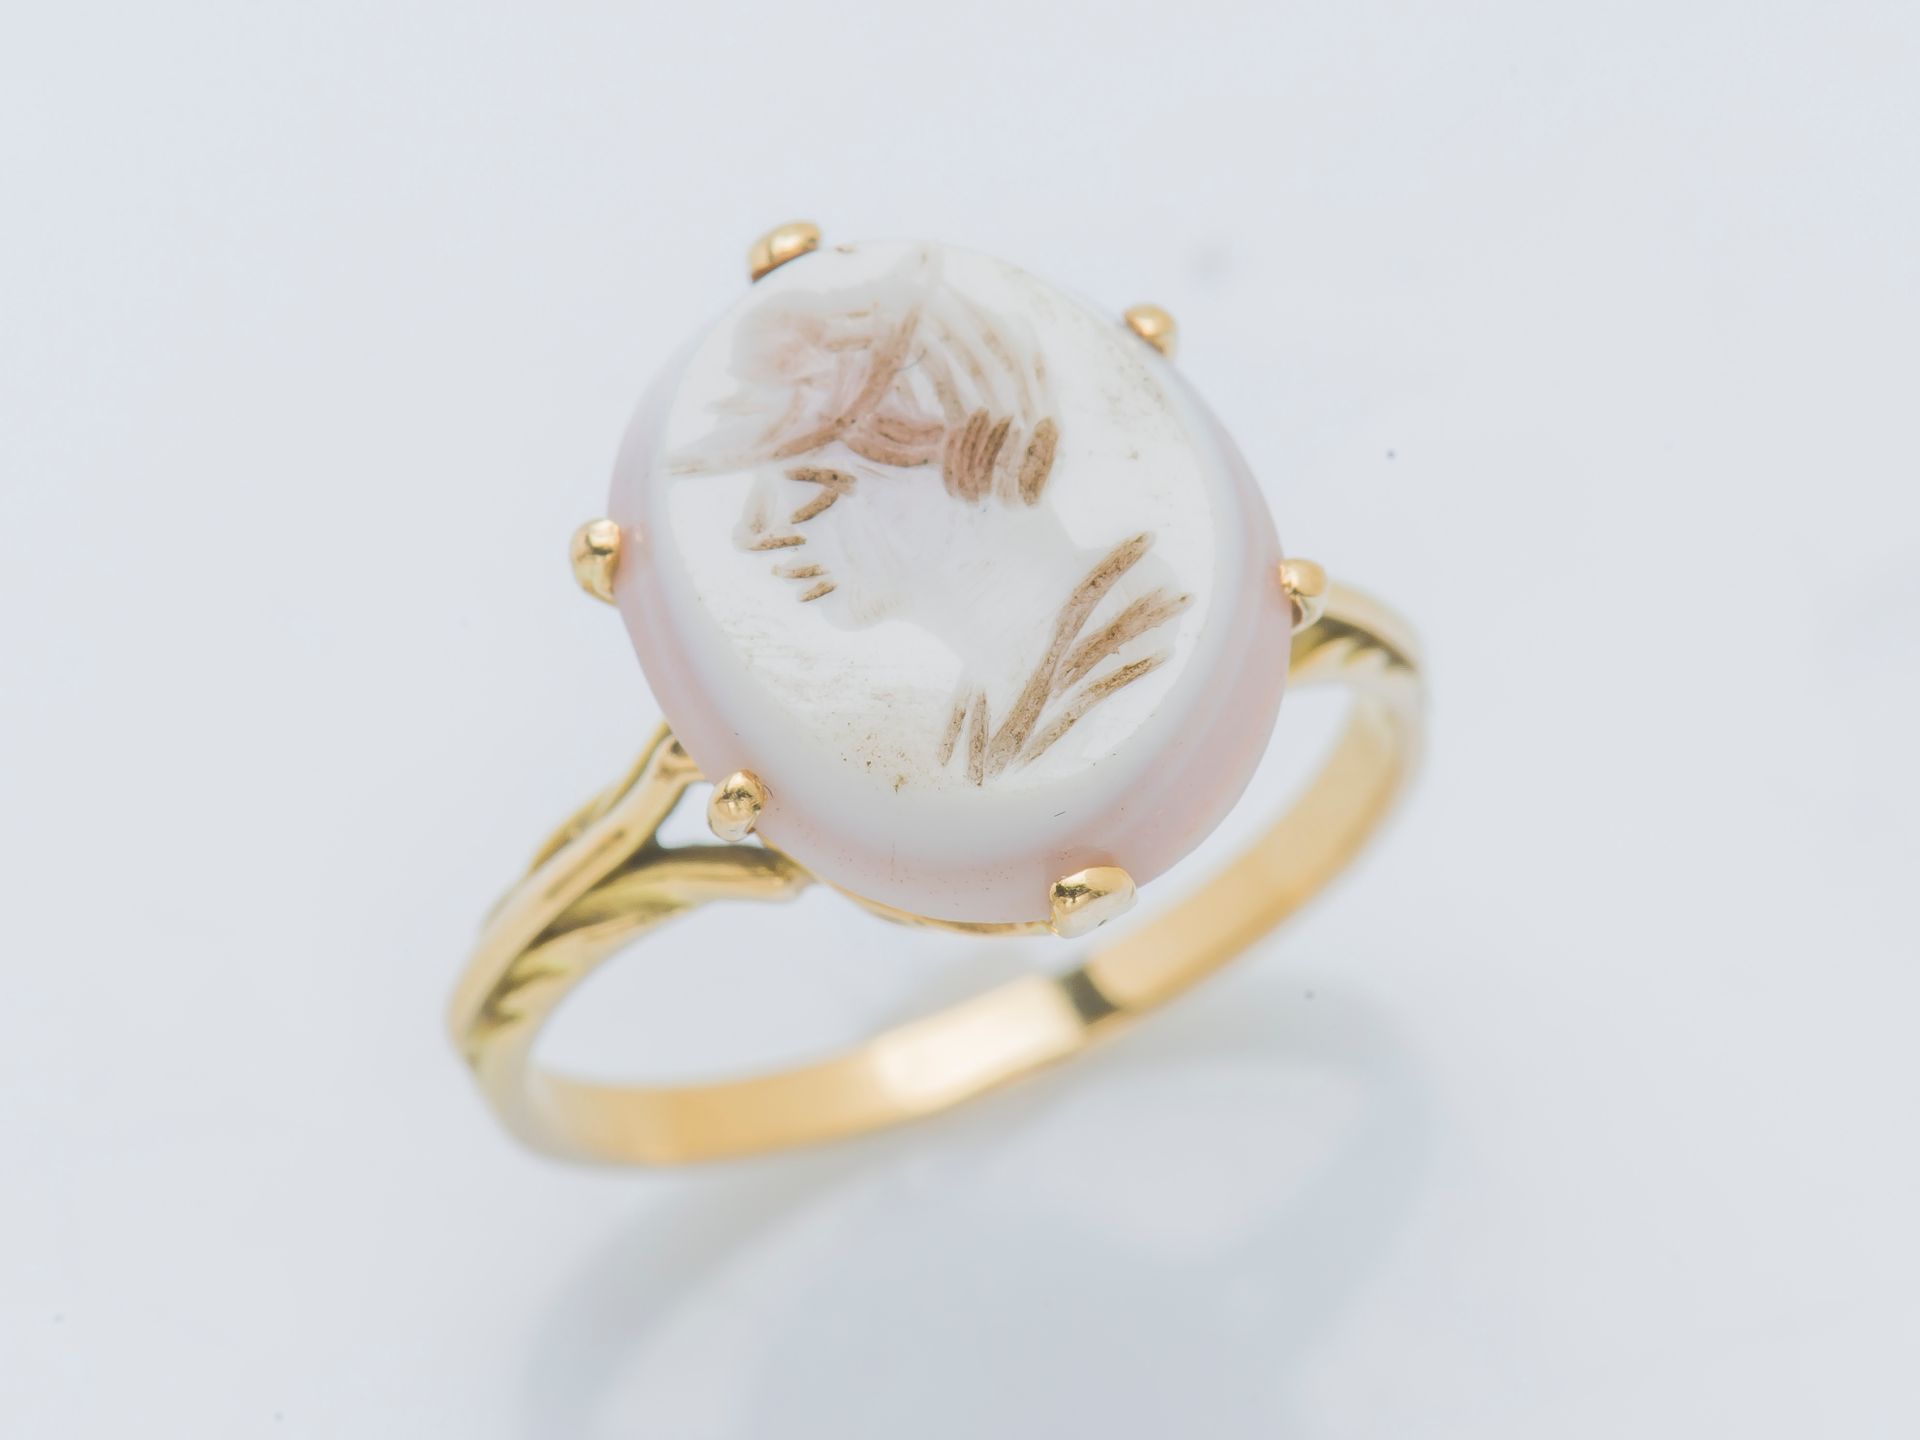 Null 一枚18克拉（750‰）的黄金戒指，上面镶嵌着乳白色玛瑙的凹刻画，描绘着一个男人的轮廓。法国作品，金匠标记不完整。

手指大小：57 总重量：3.5克